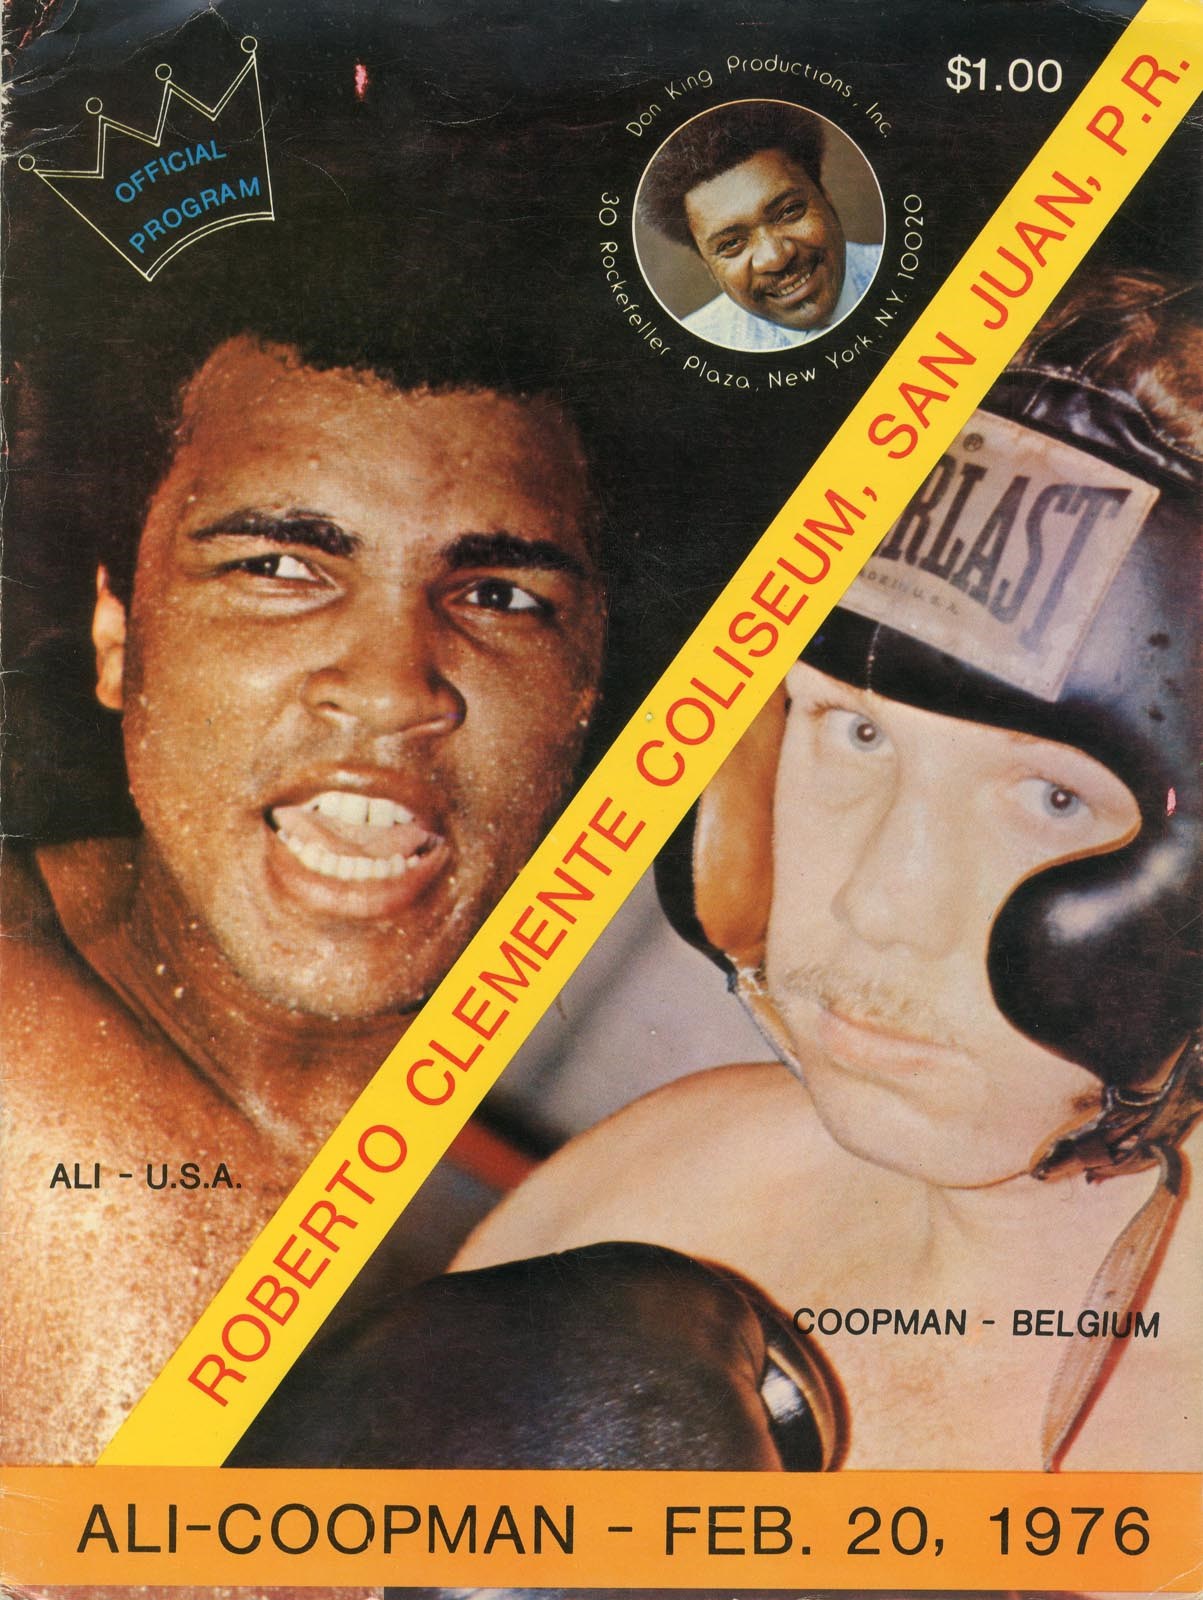 - 1976 Muhammad Ali vs. Jean-Pierre Coopman On-Site Program